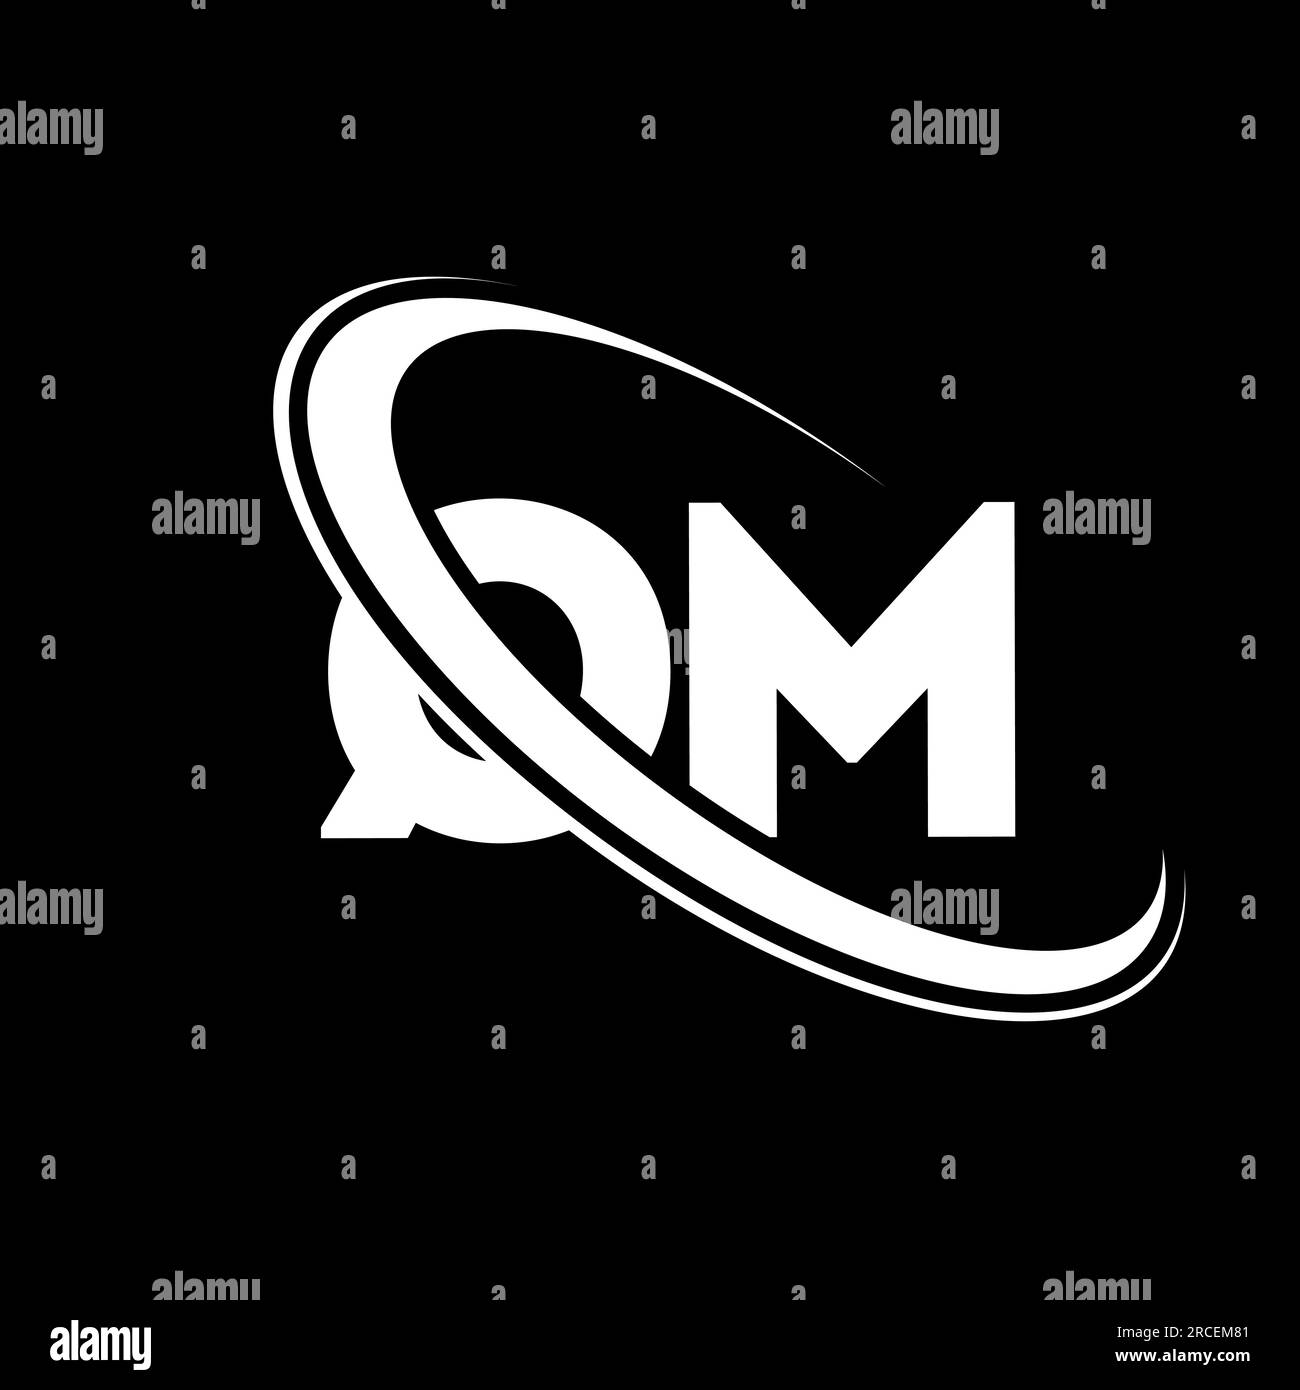 QM logo. Q M design. White QM letter. QM/Q M letter logo design. Initial letter QM linked circle uppercase monogram logo. Stock Vector